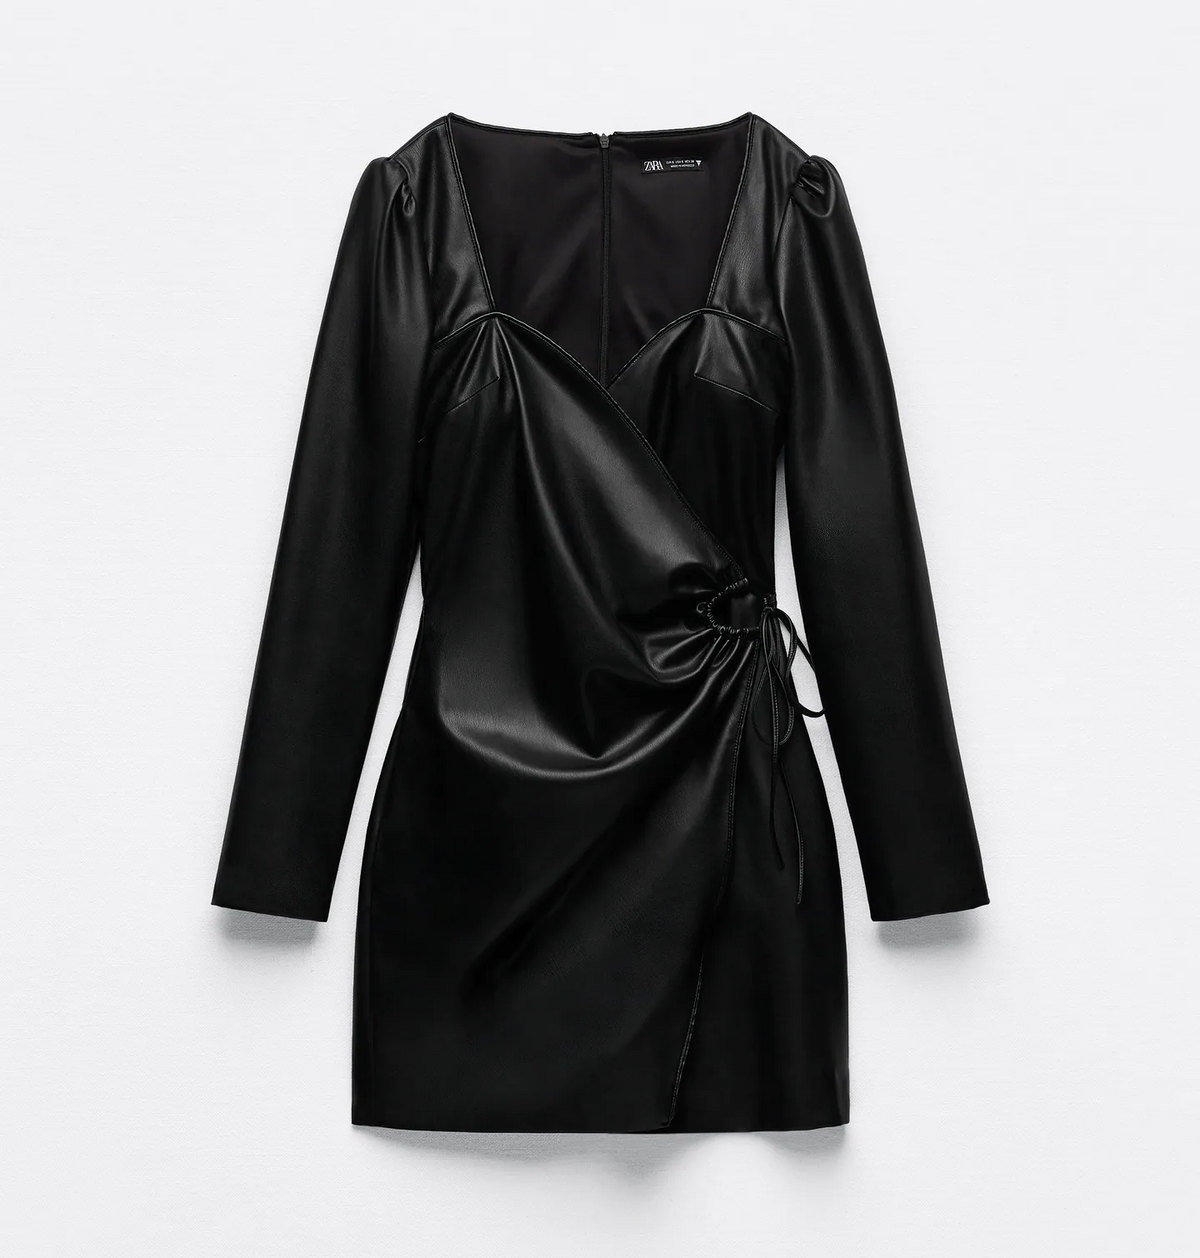 Vestidos negros: Zara tiene 12 versiones de este básico que son tendencia este otoño